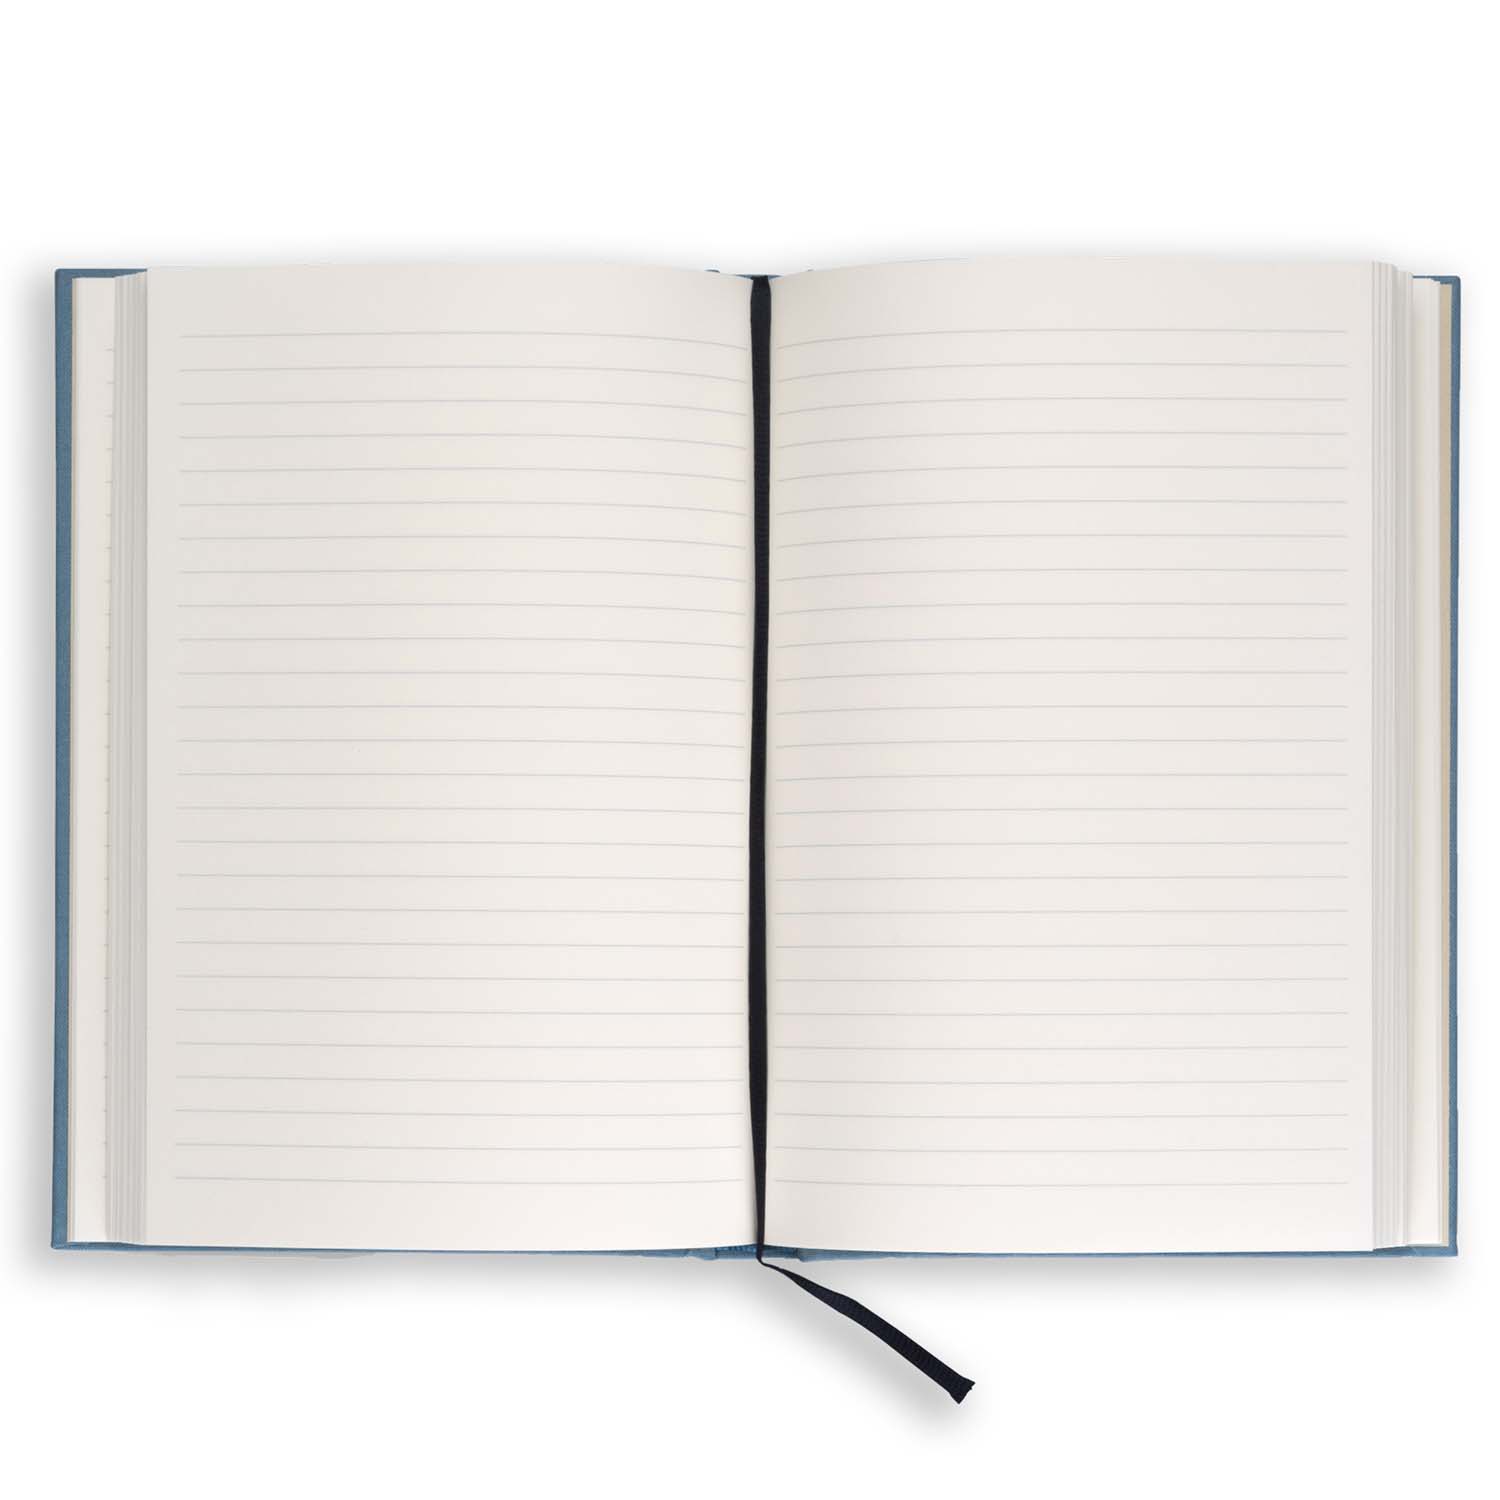 Kartotek Capenhagen - Hardcover Notebook - Journal Light Blue A5 - HN-0003 - Inside pages